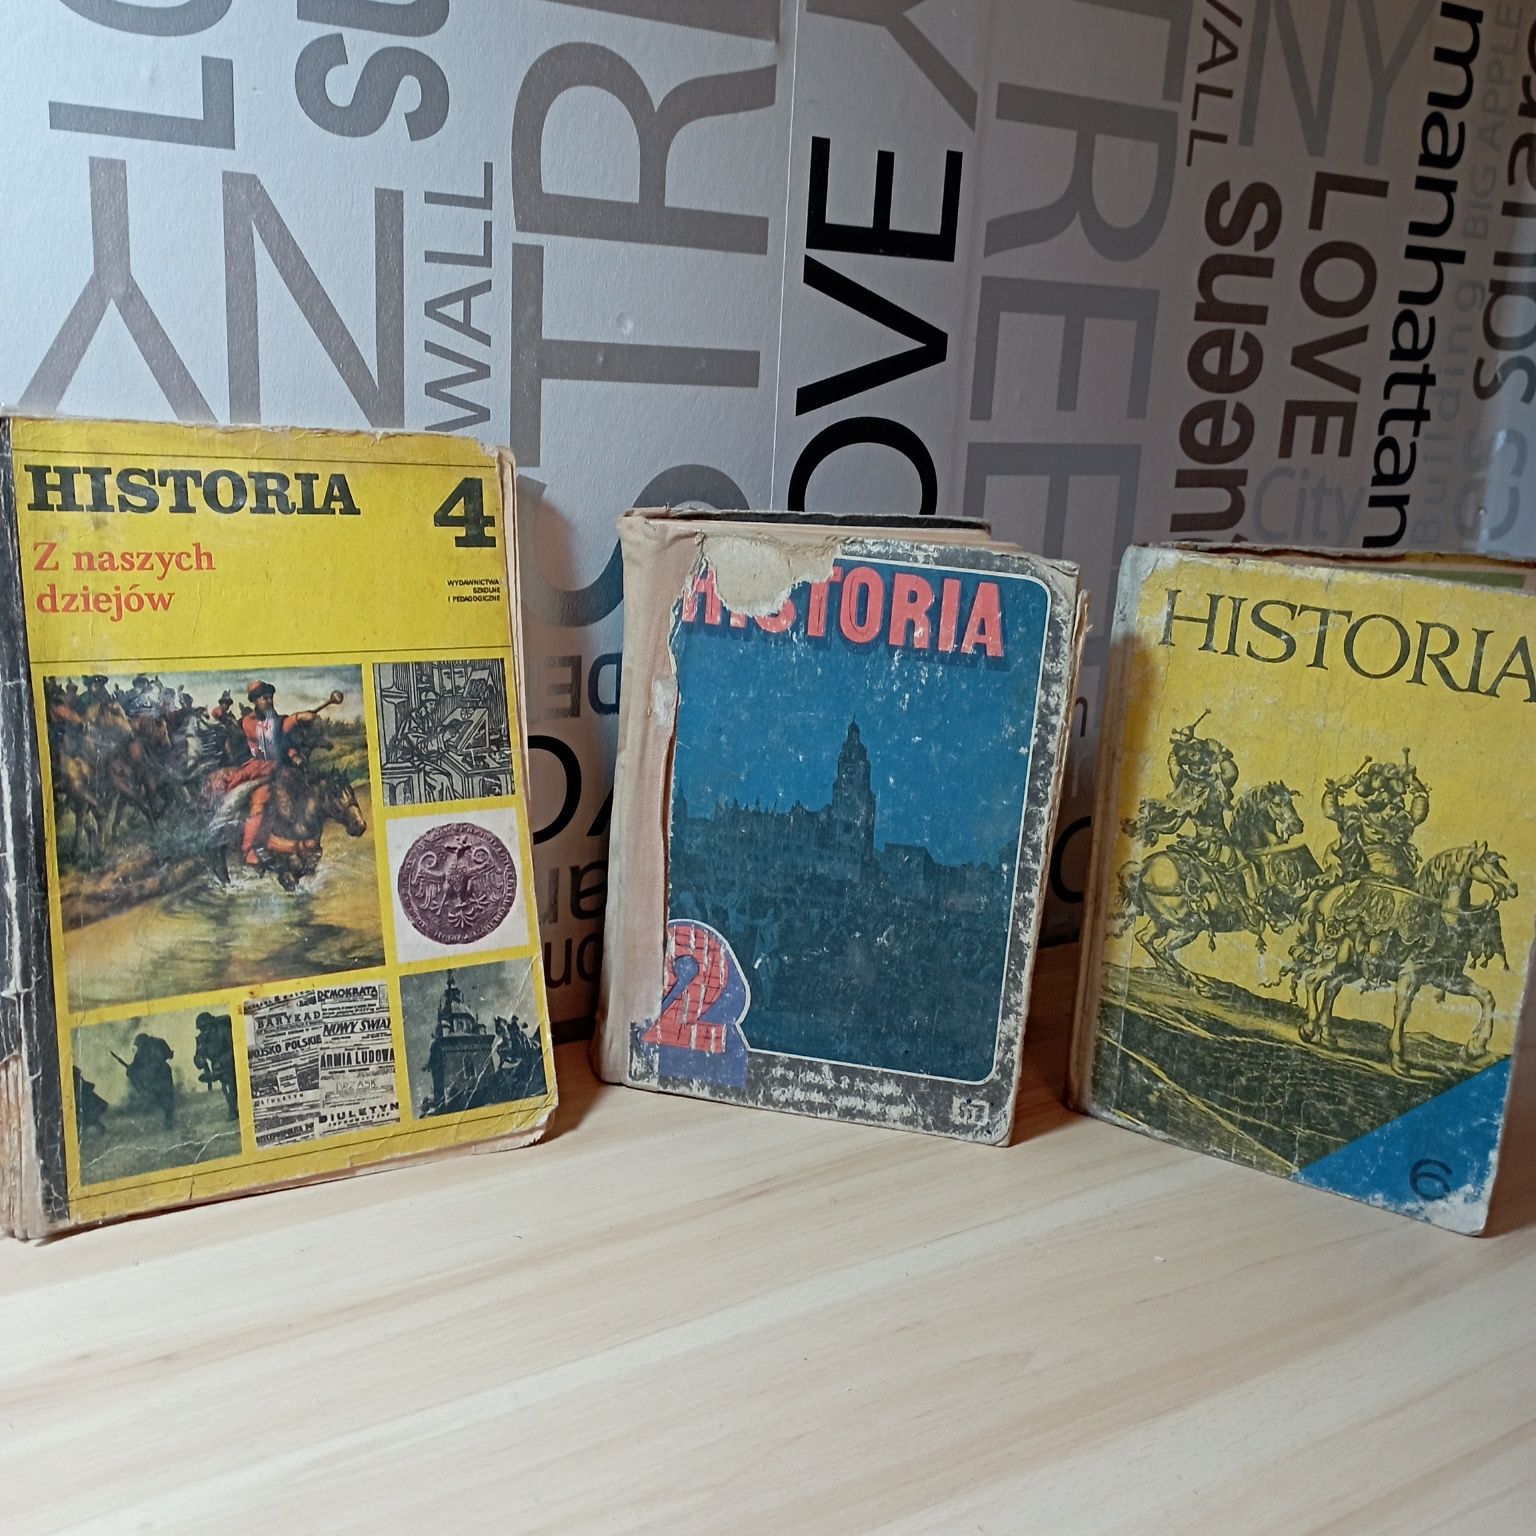 Historia. trzy różne podręczniki. 1984r.